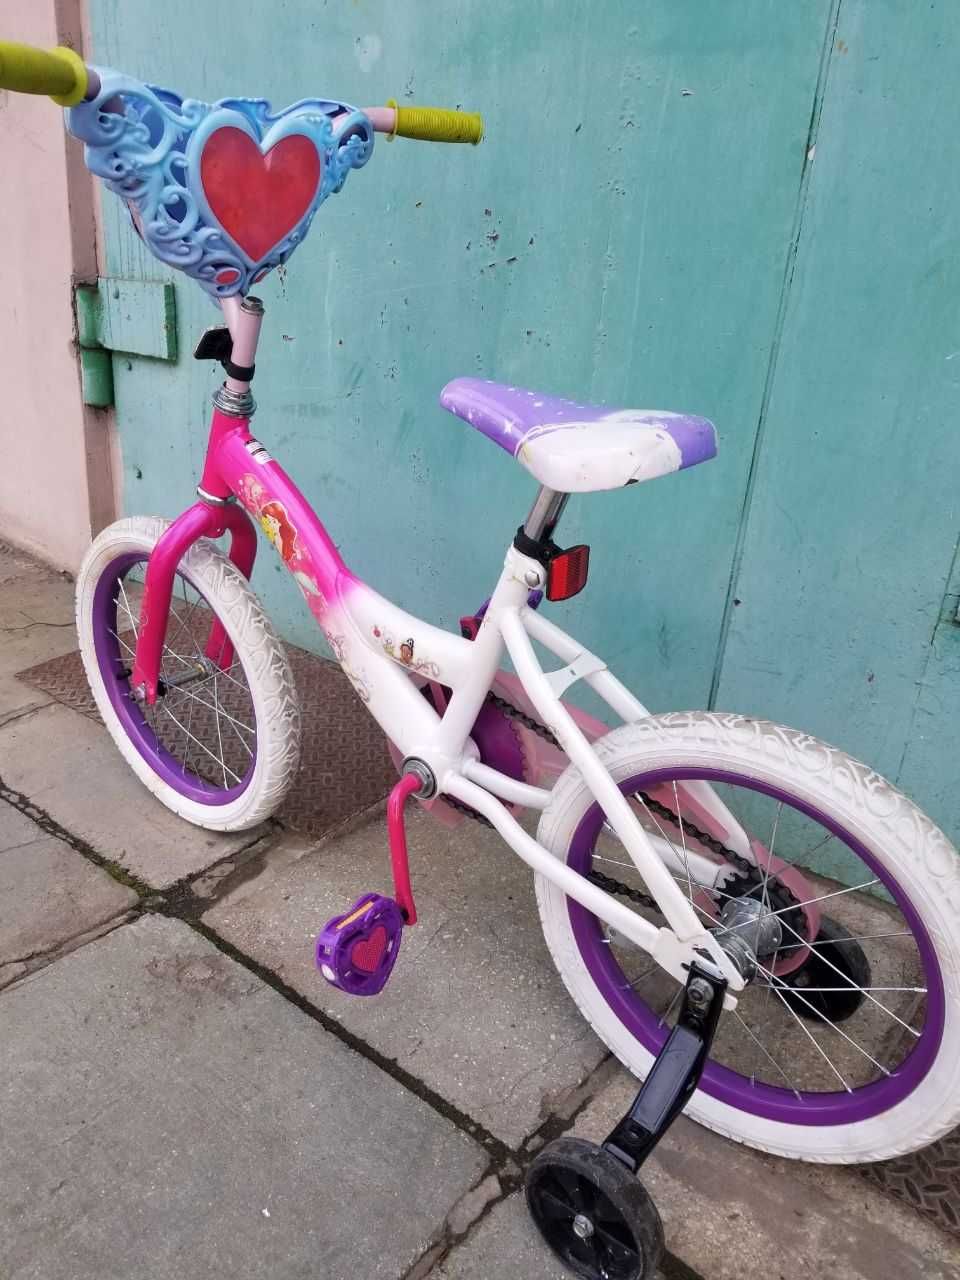 Детский   велосипед